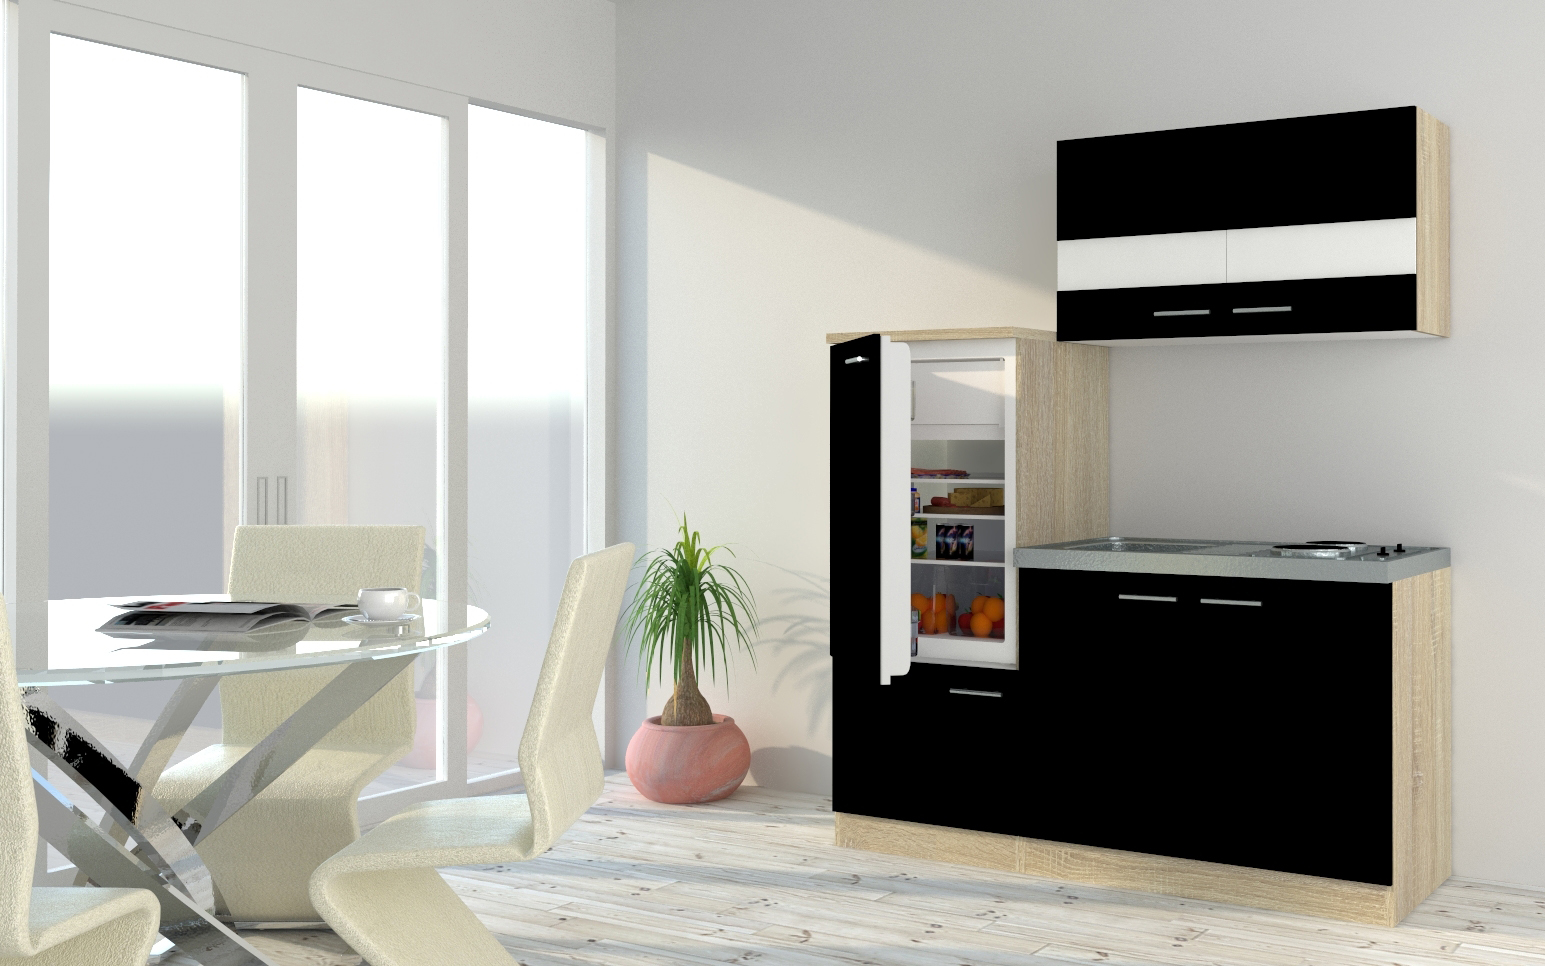 Küche Miniküche Single Eiche Schwarz  Kühlschrank Luis 160 cm Respekta